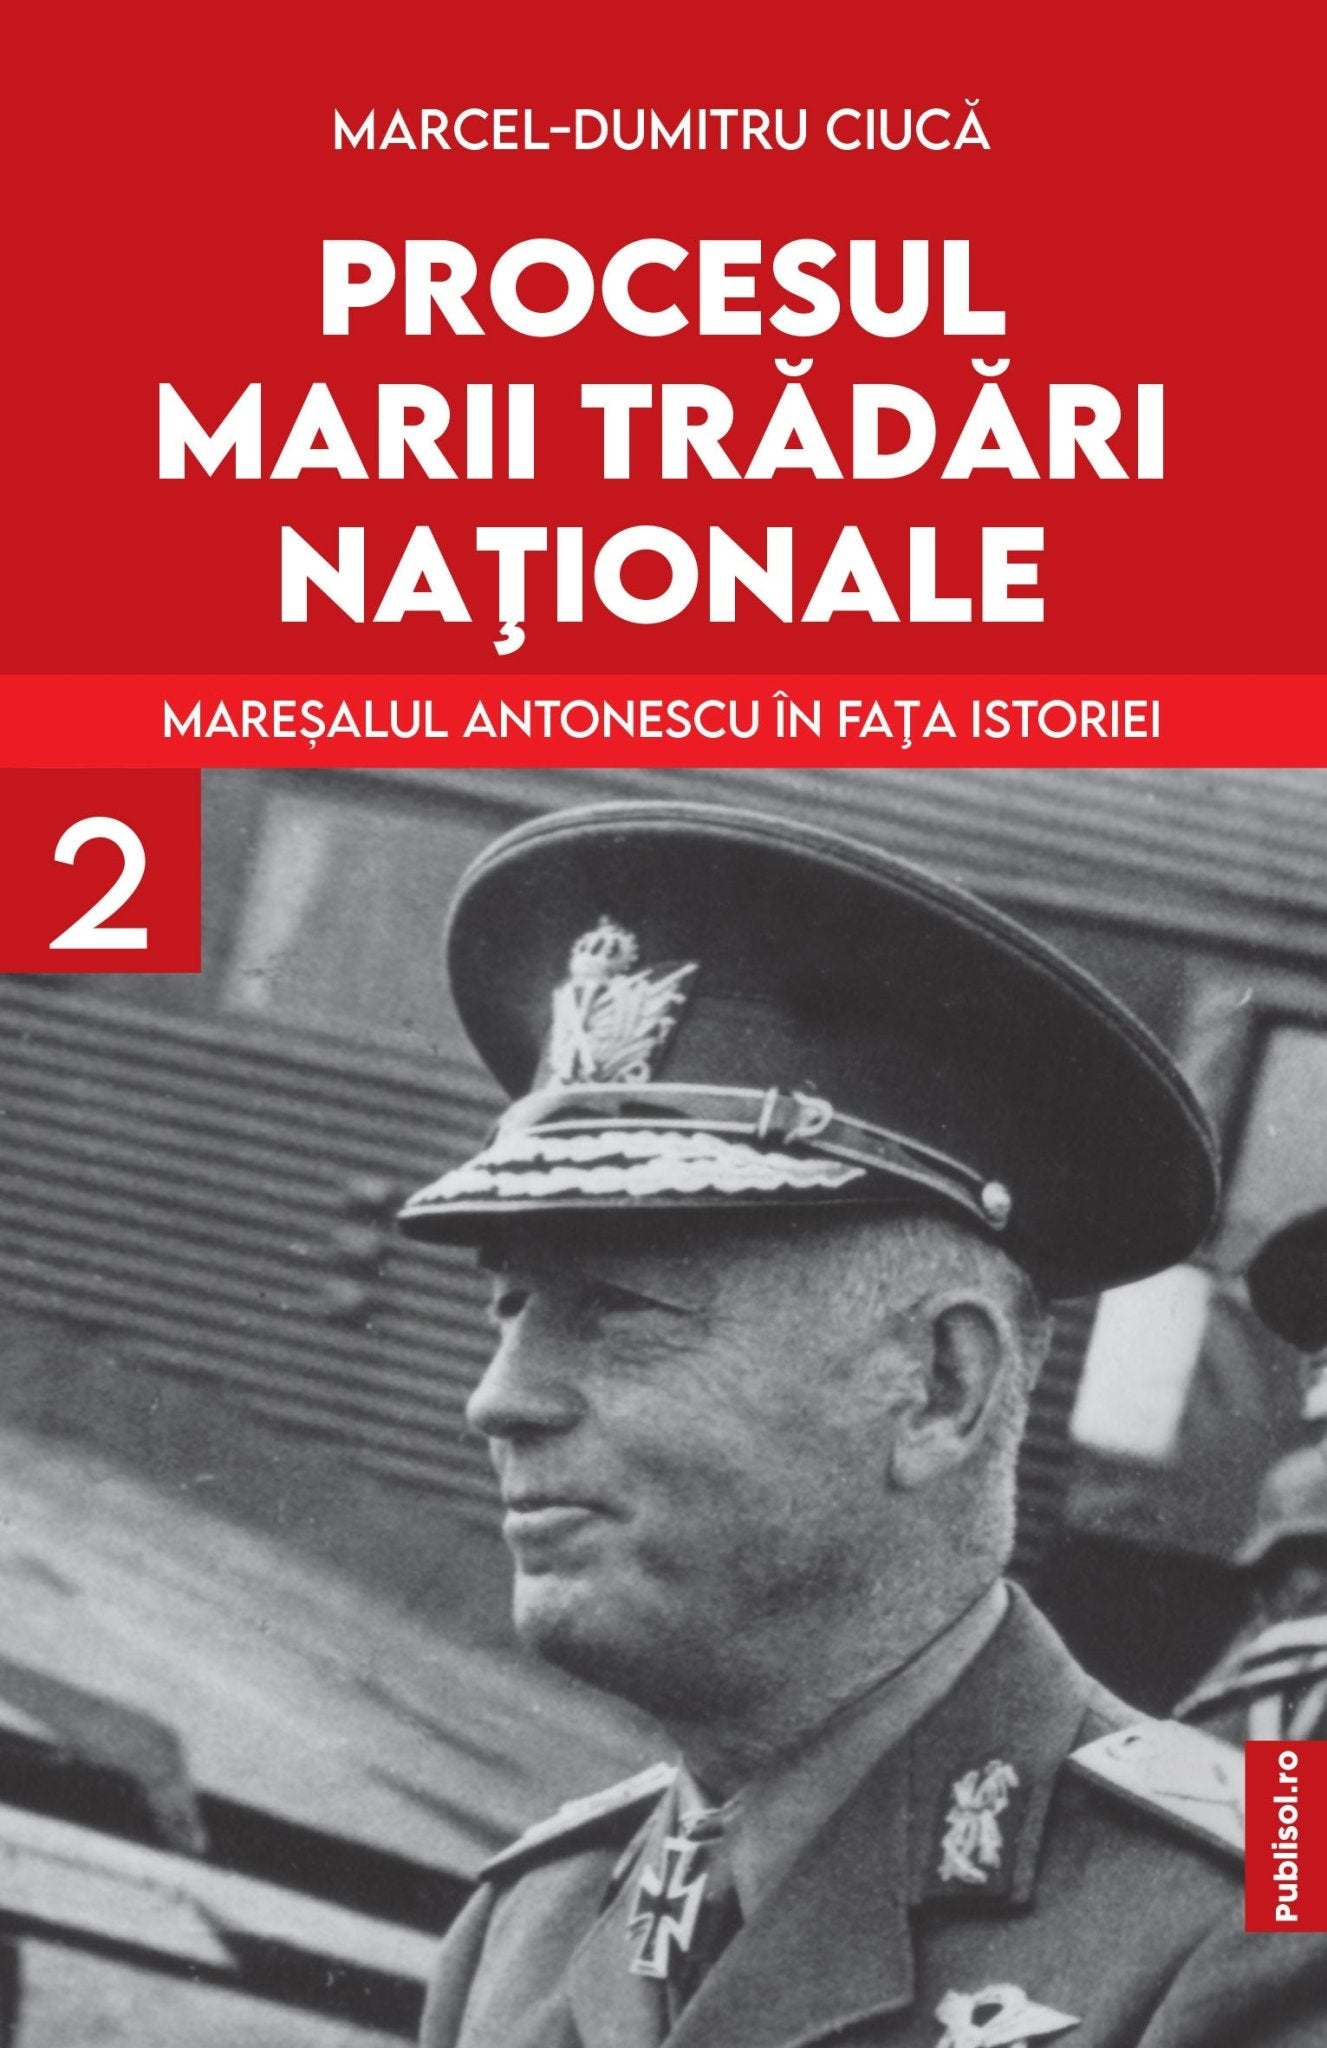 Maresalul Antonescu In fata Istoriei - Pachet 3 volume - Ed. digitala - PDF - Publisol.ro